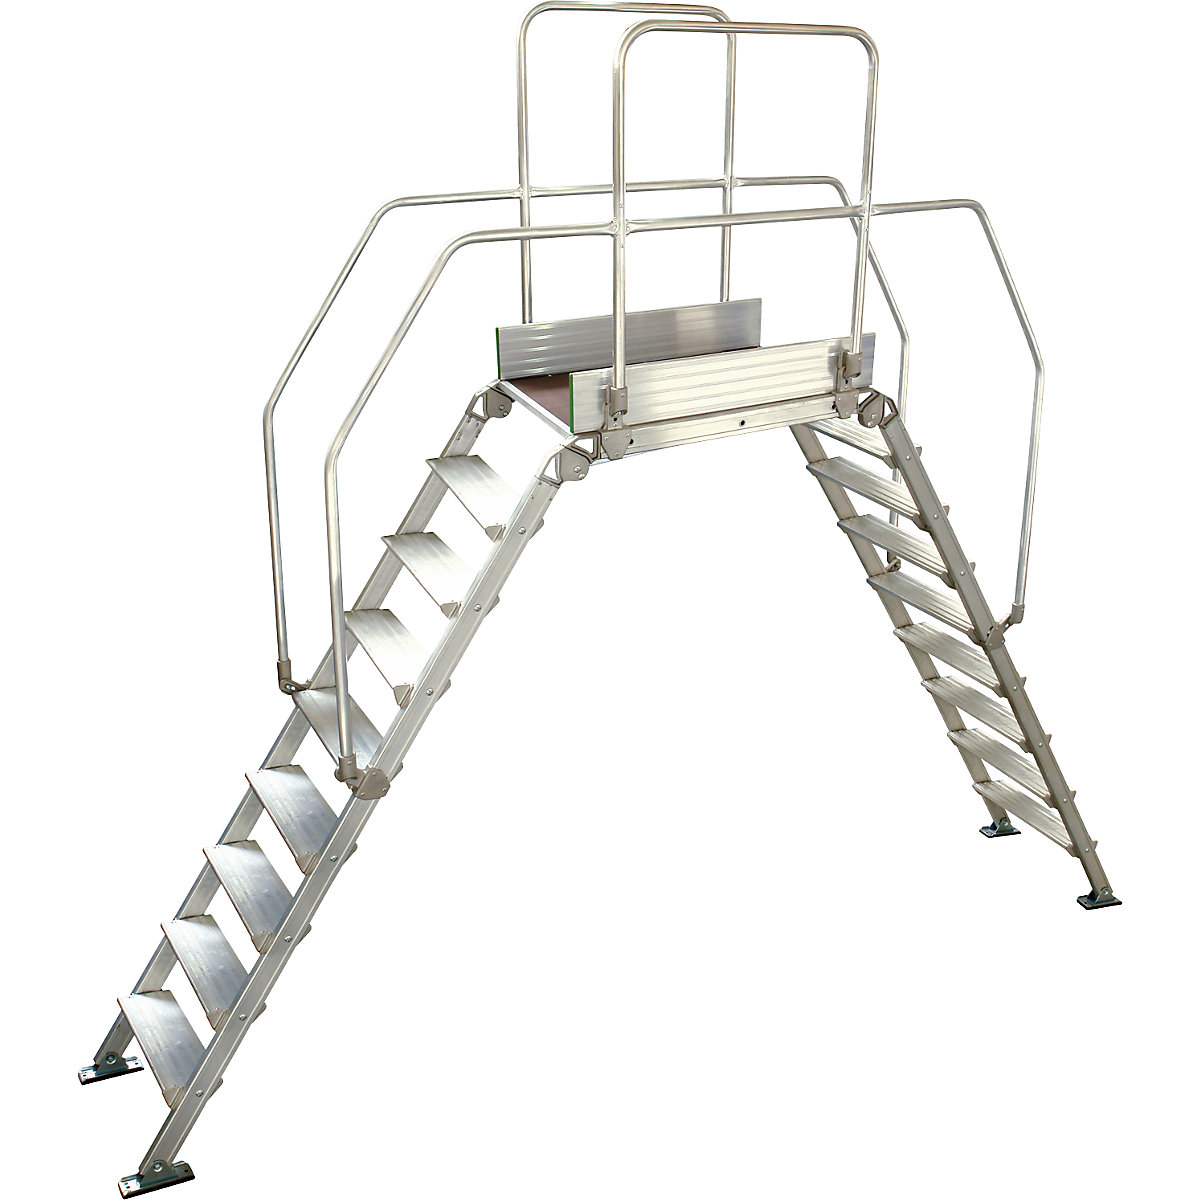 Aluminijasta premostitvena lestev, skupna obremenitev 200 kg, 9 stopnic, podest 900 x 530 mm